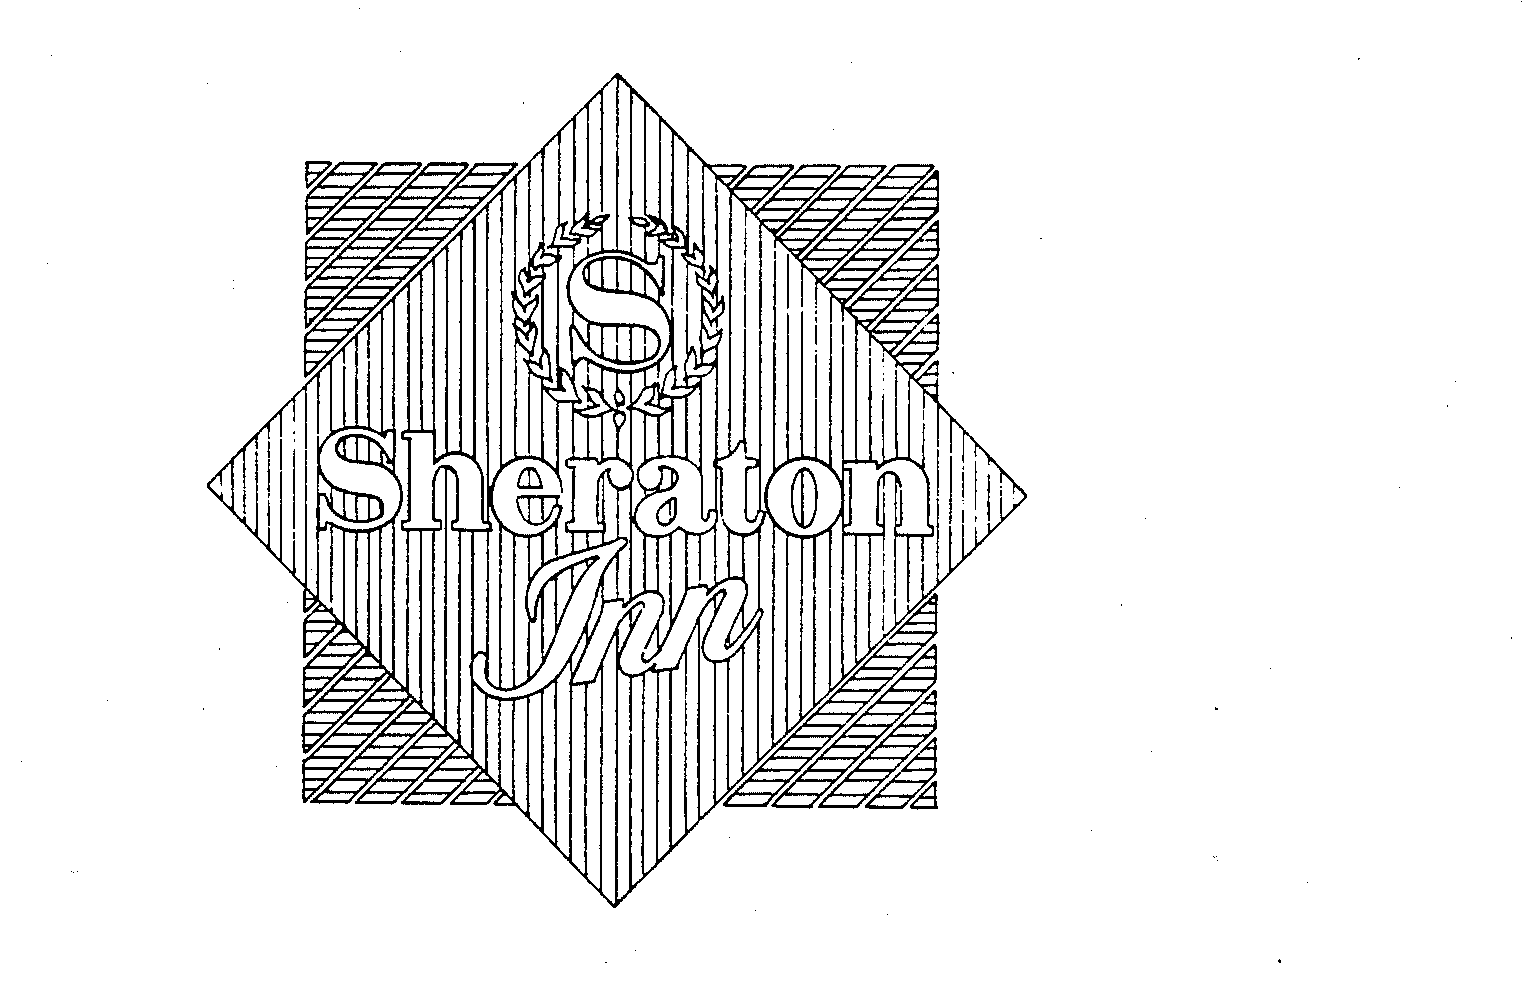 S SHERATON INN